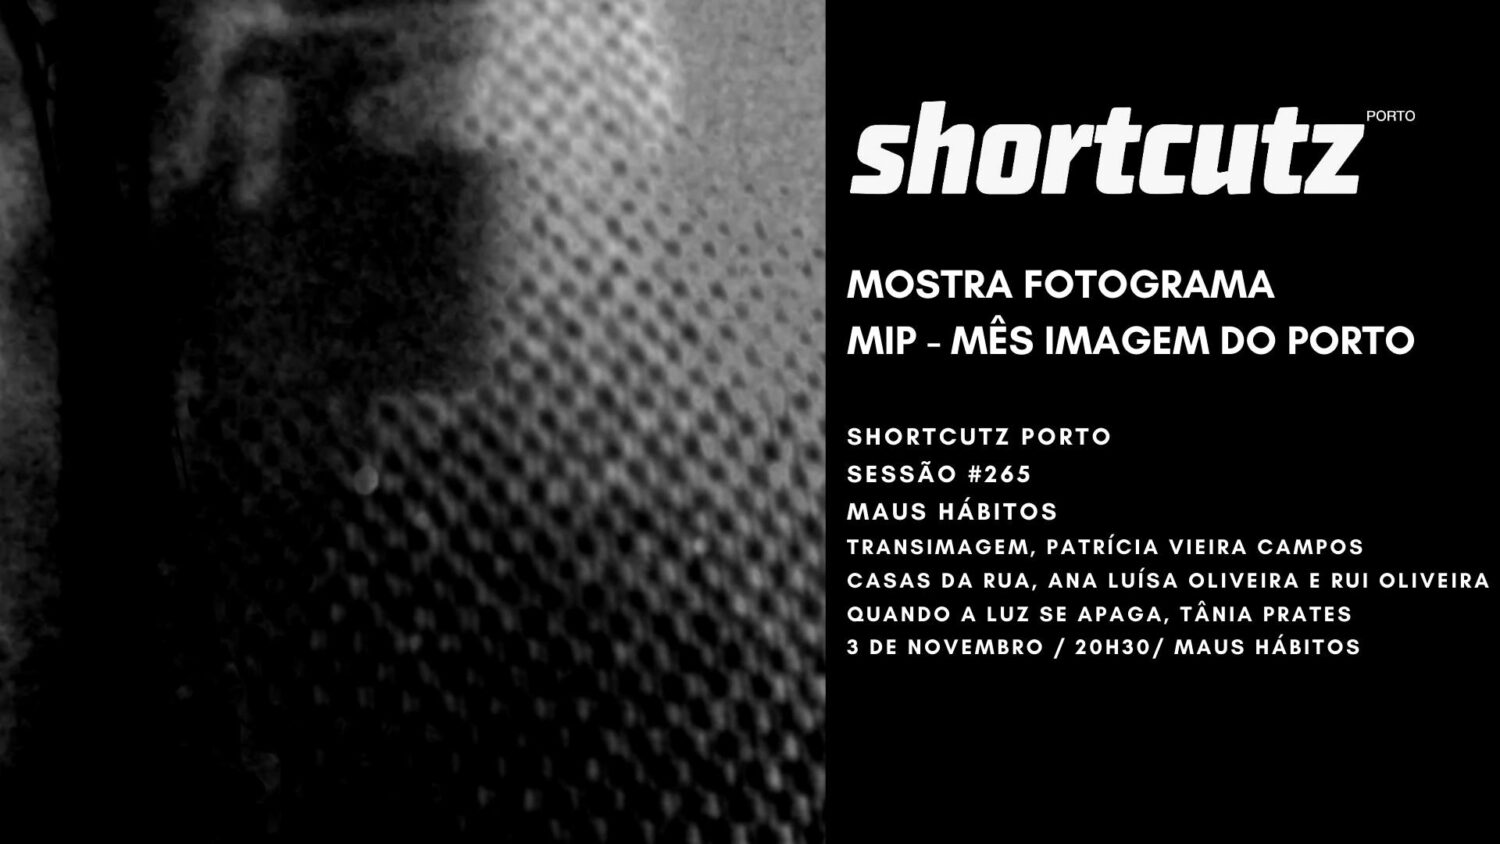 Shortcutz Porto #265 Mostra Fotograma MIP (Mês da Imagem do Porto